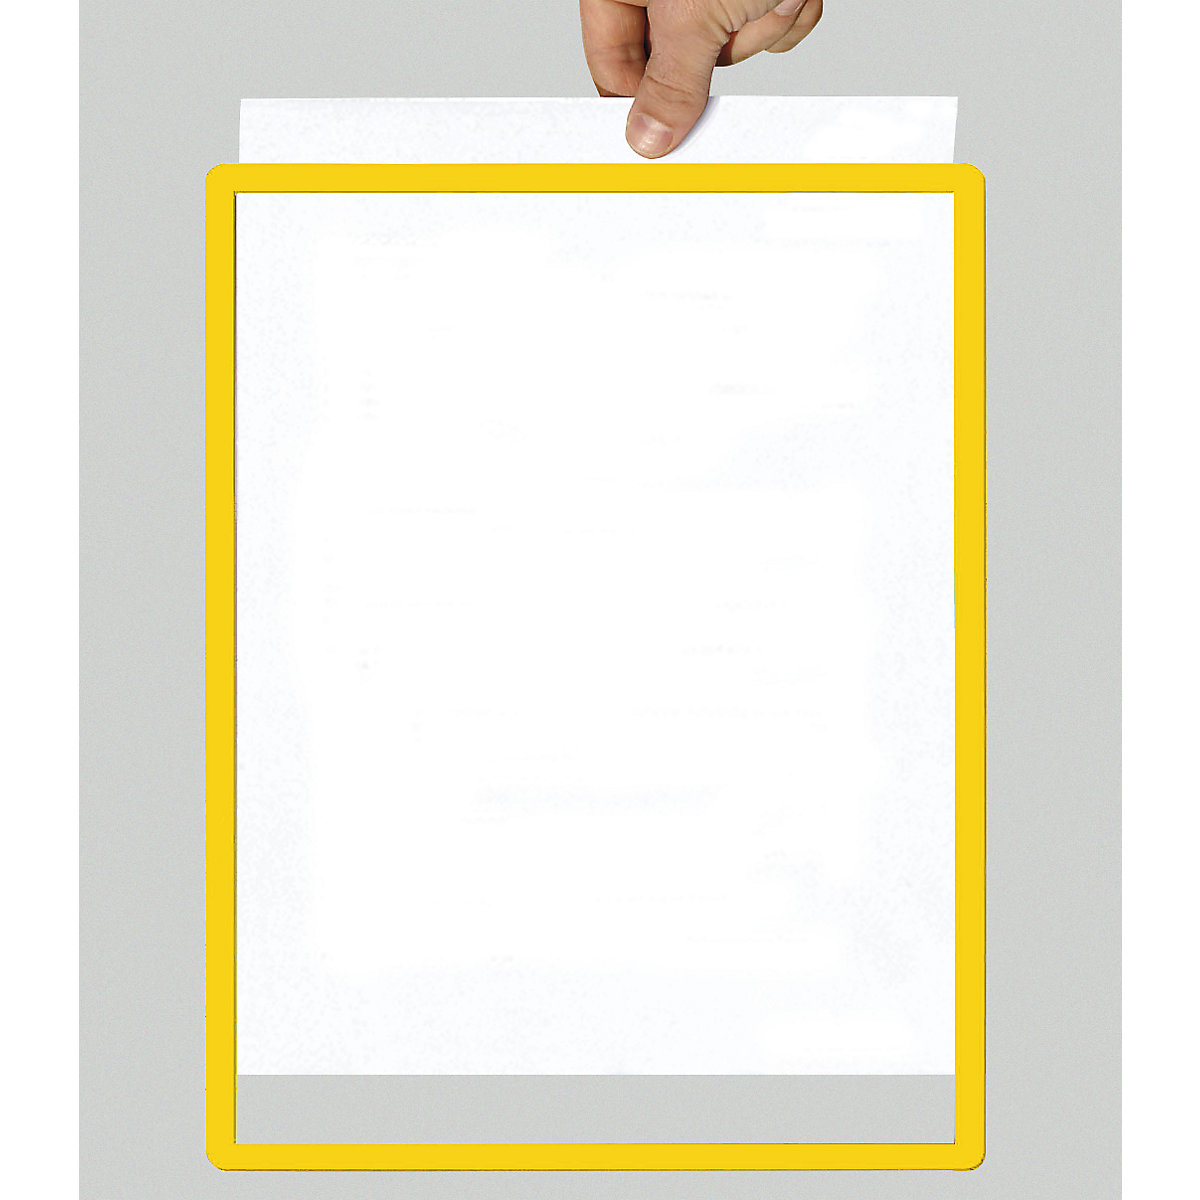 Rahmen mit Klarsichtfolie, Papierformat A3, VE 10 Stk, selbstklebend, gelb